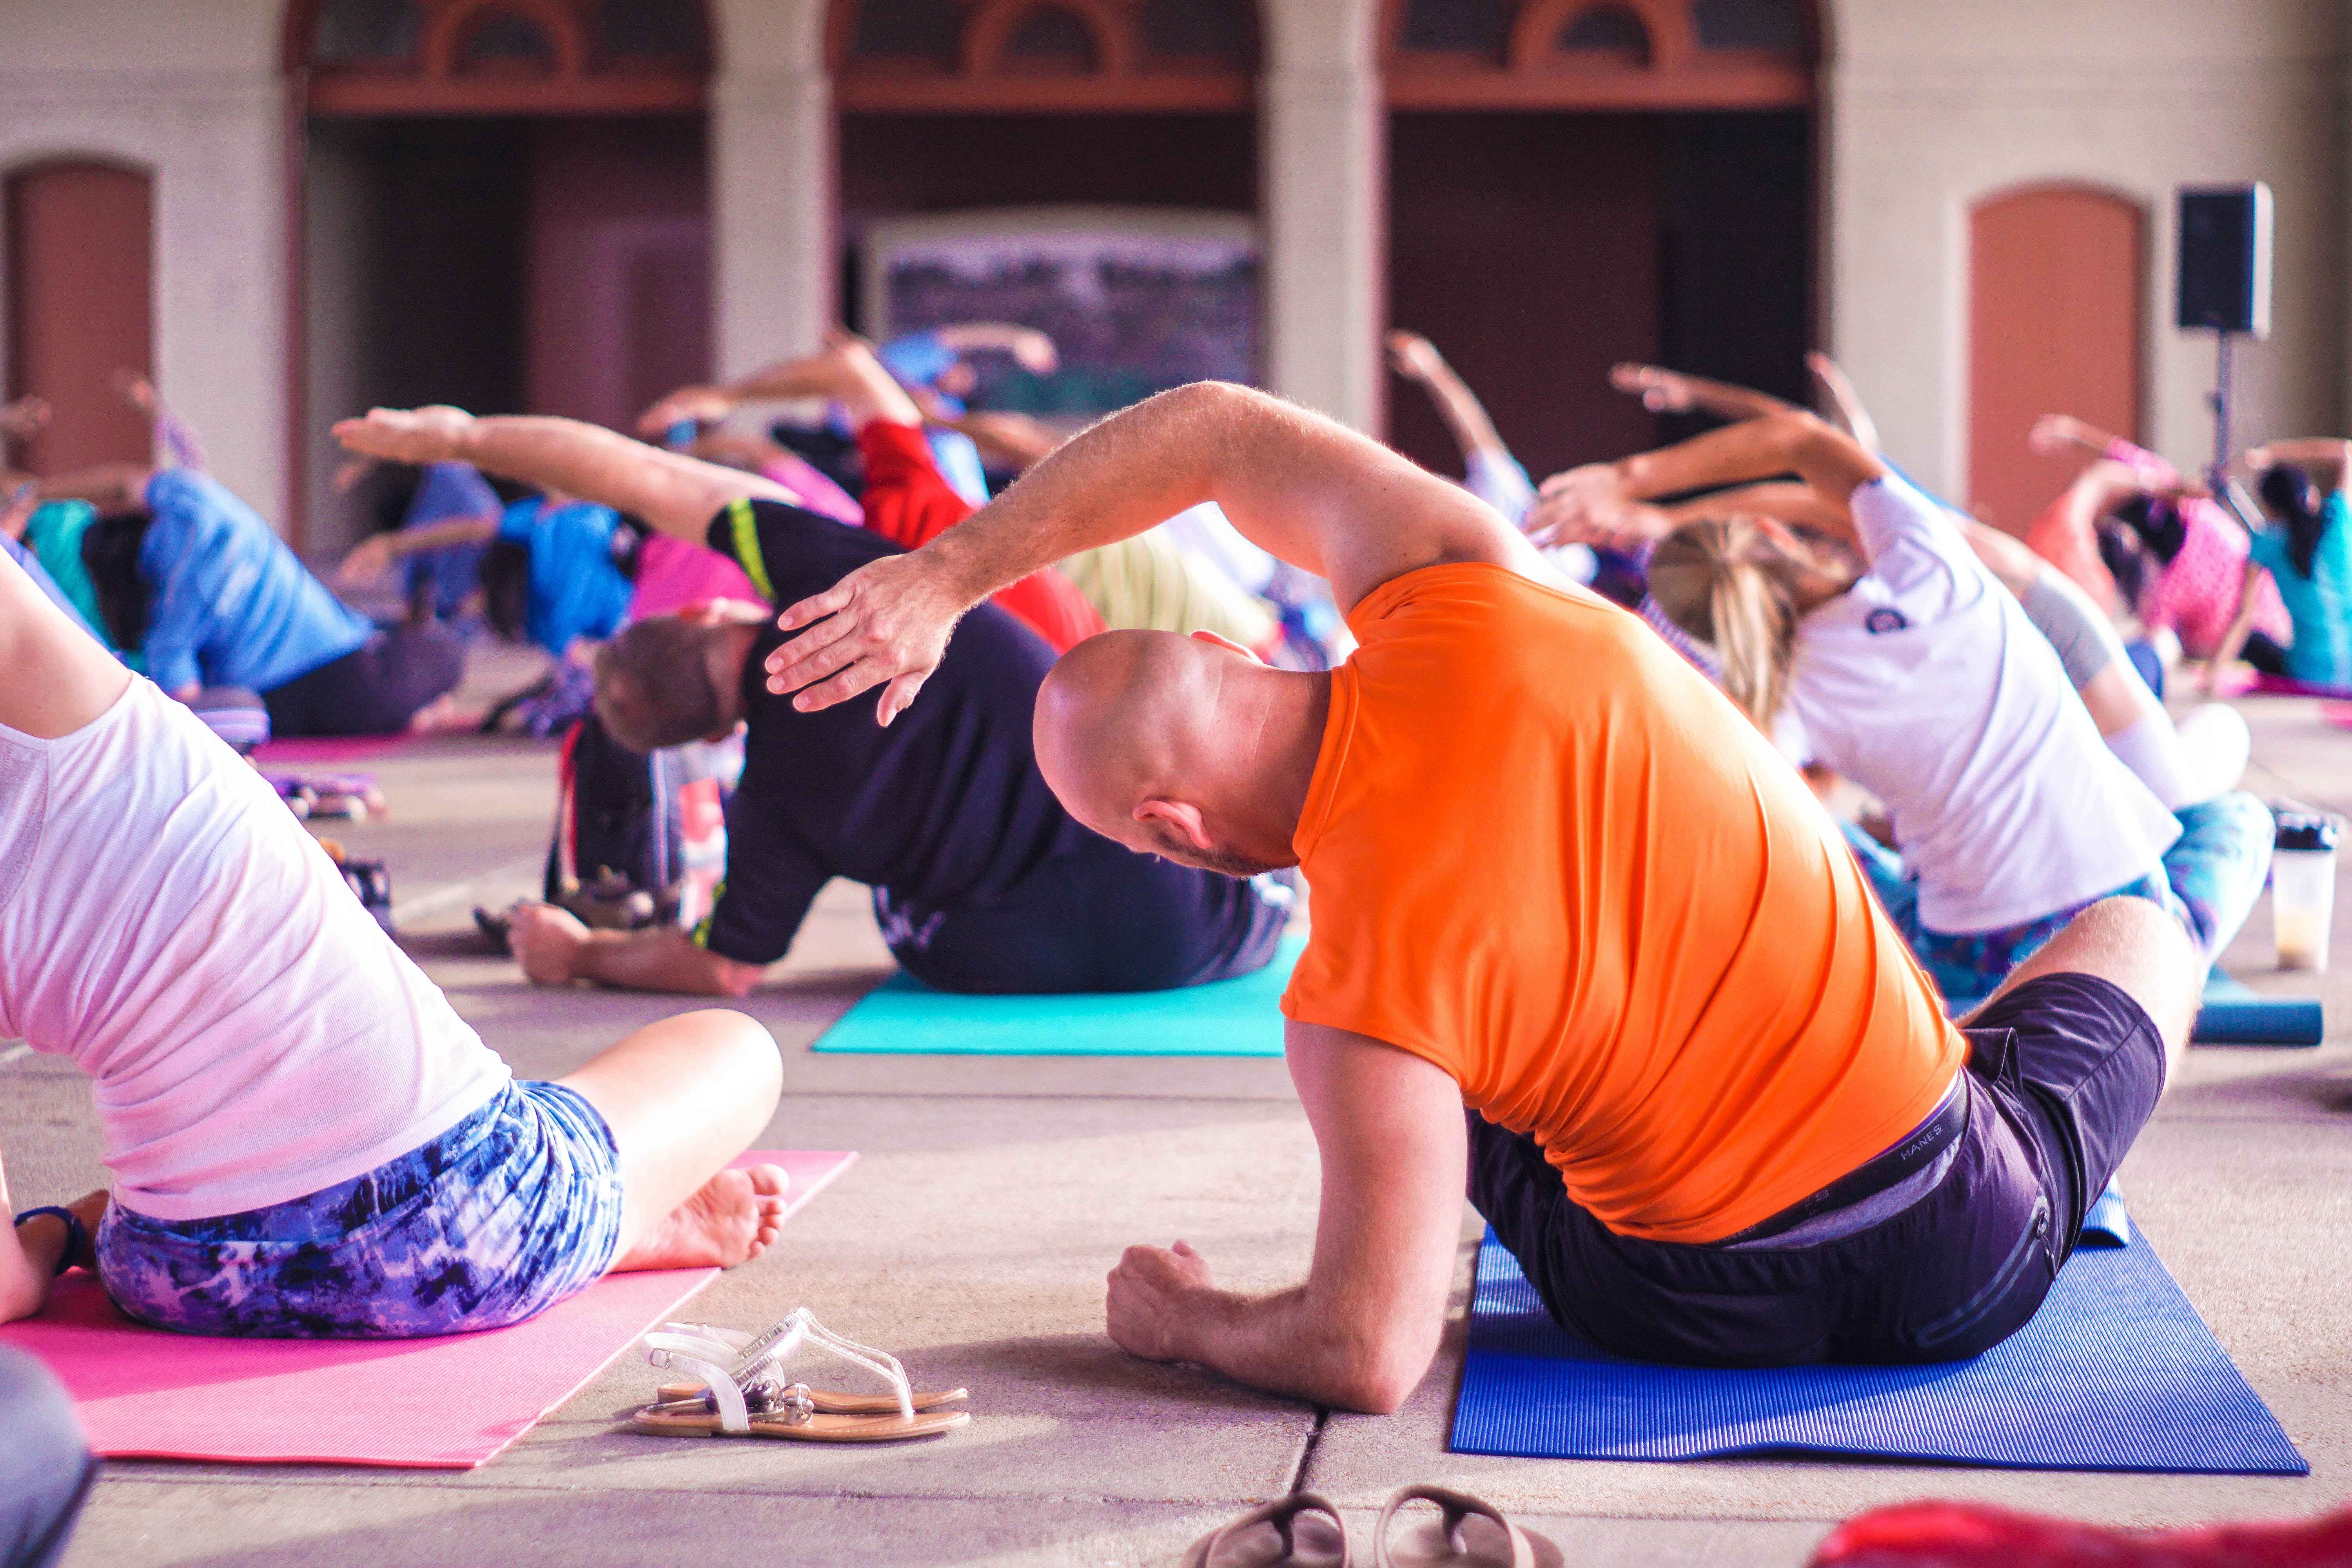 Where and when did yoga originate?